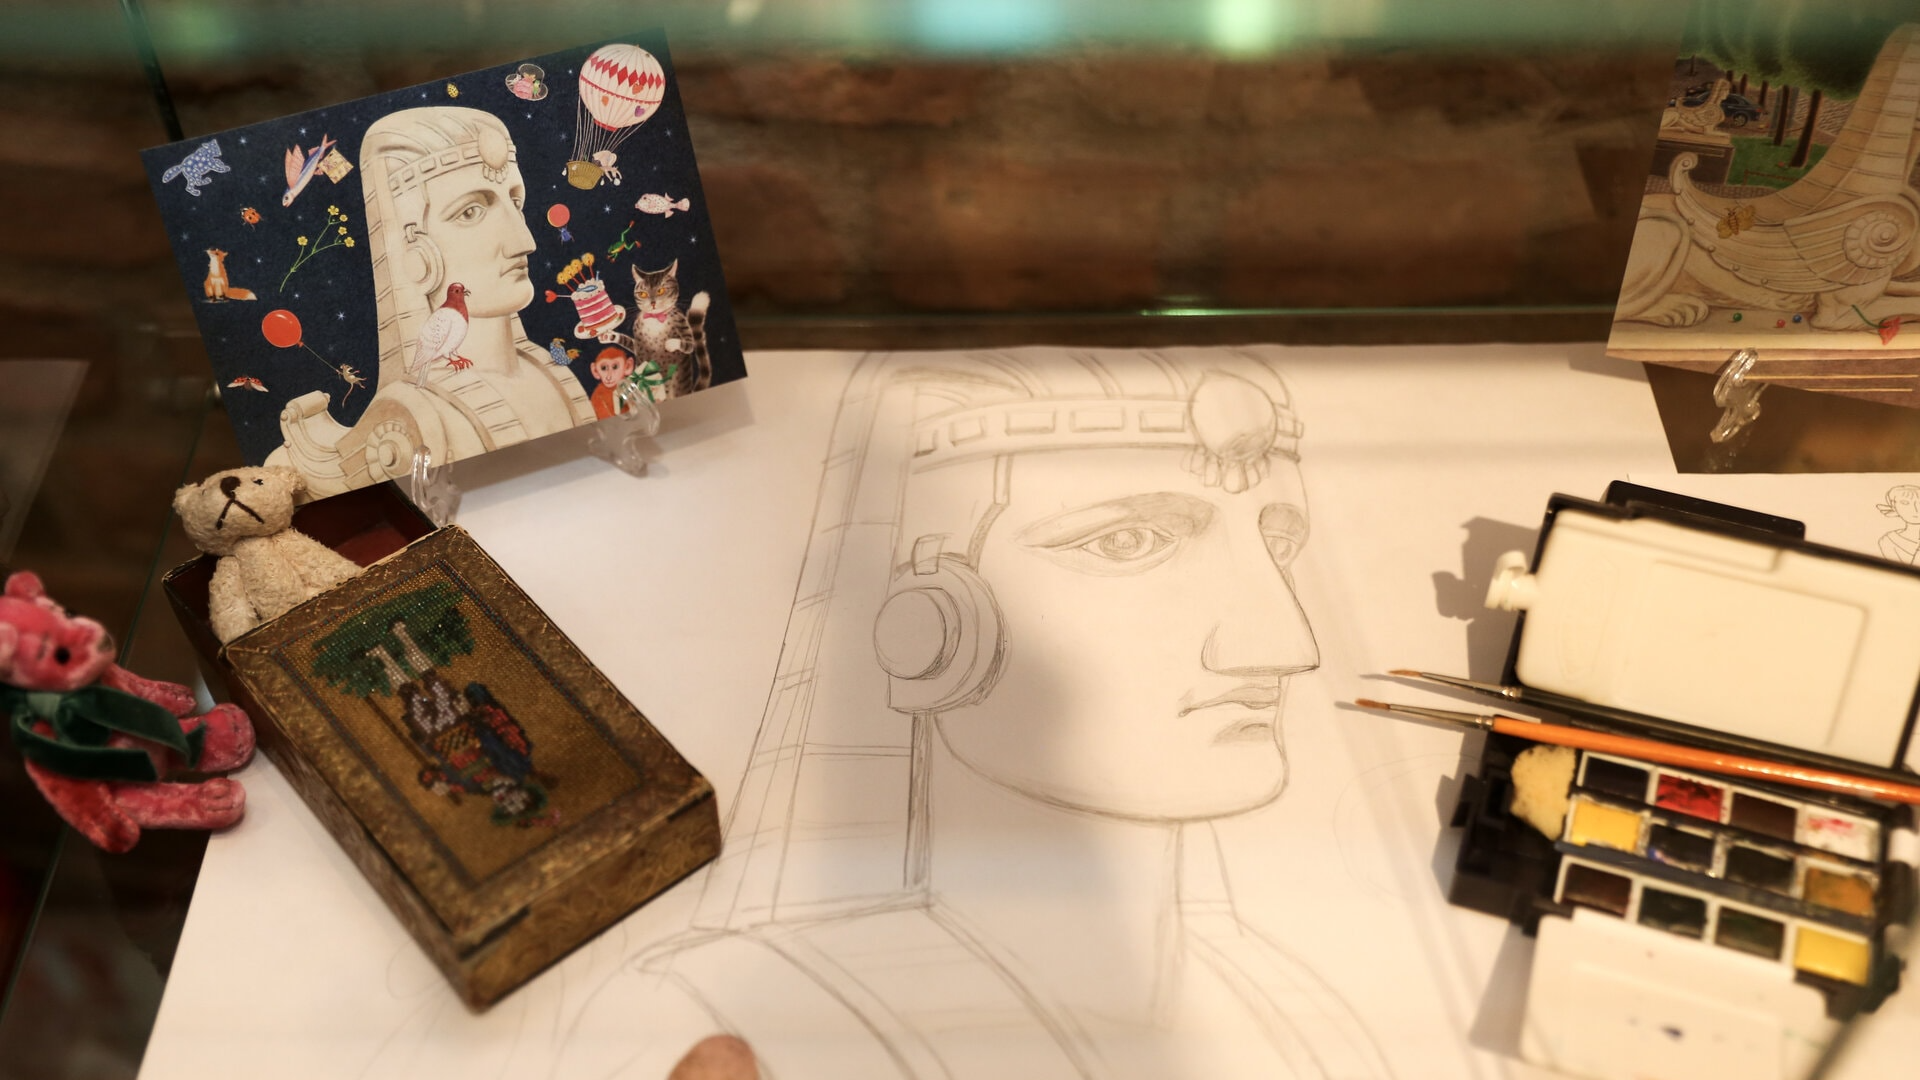 Ilustrācija radošai darbnīcai “Sfinksas smaida noslēpums”, kuras centrā ir ar zīmuli skicēta sfinksas galva